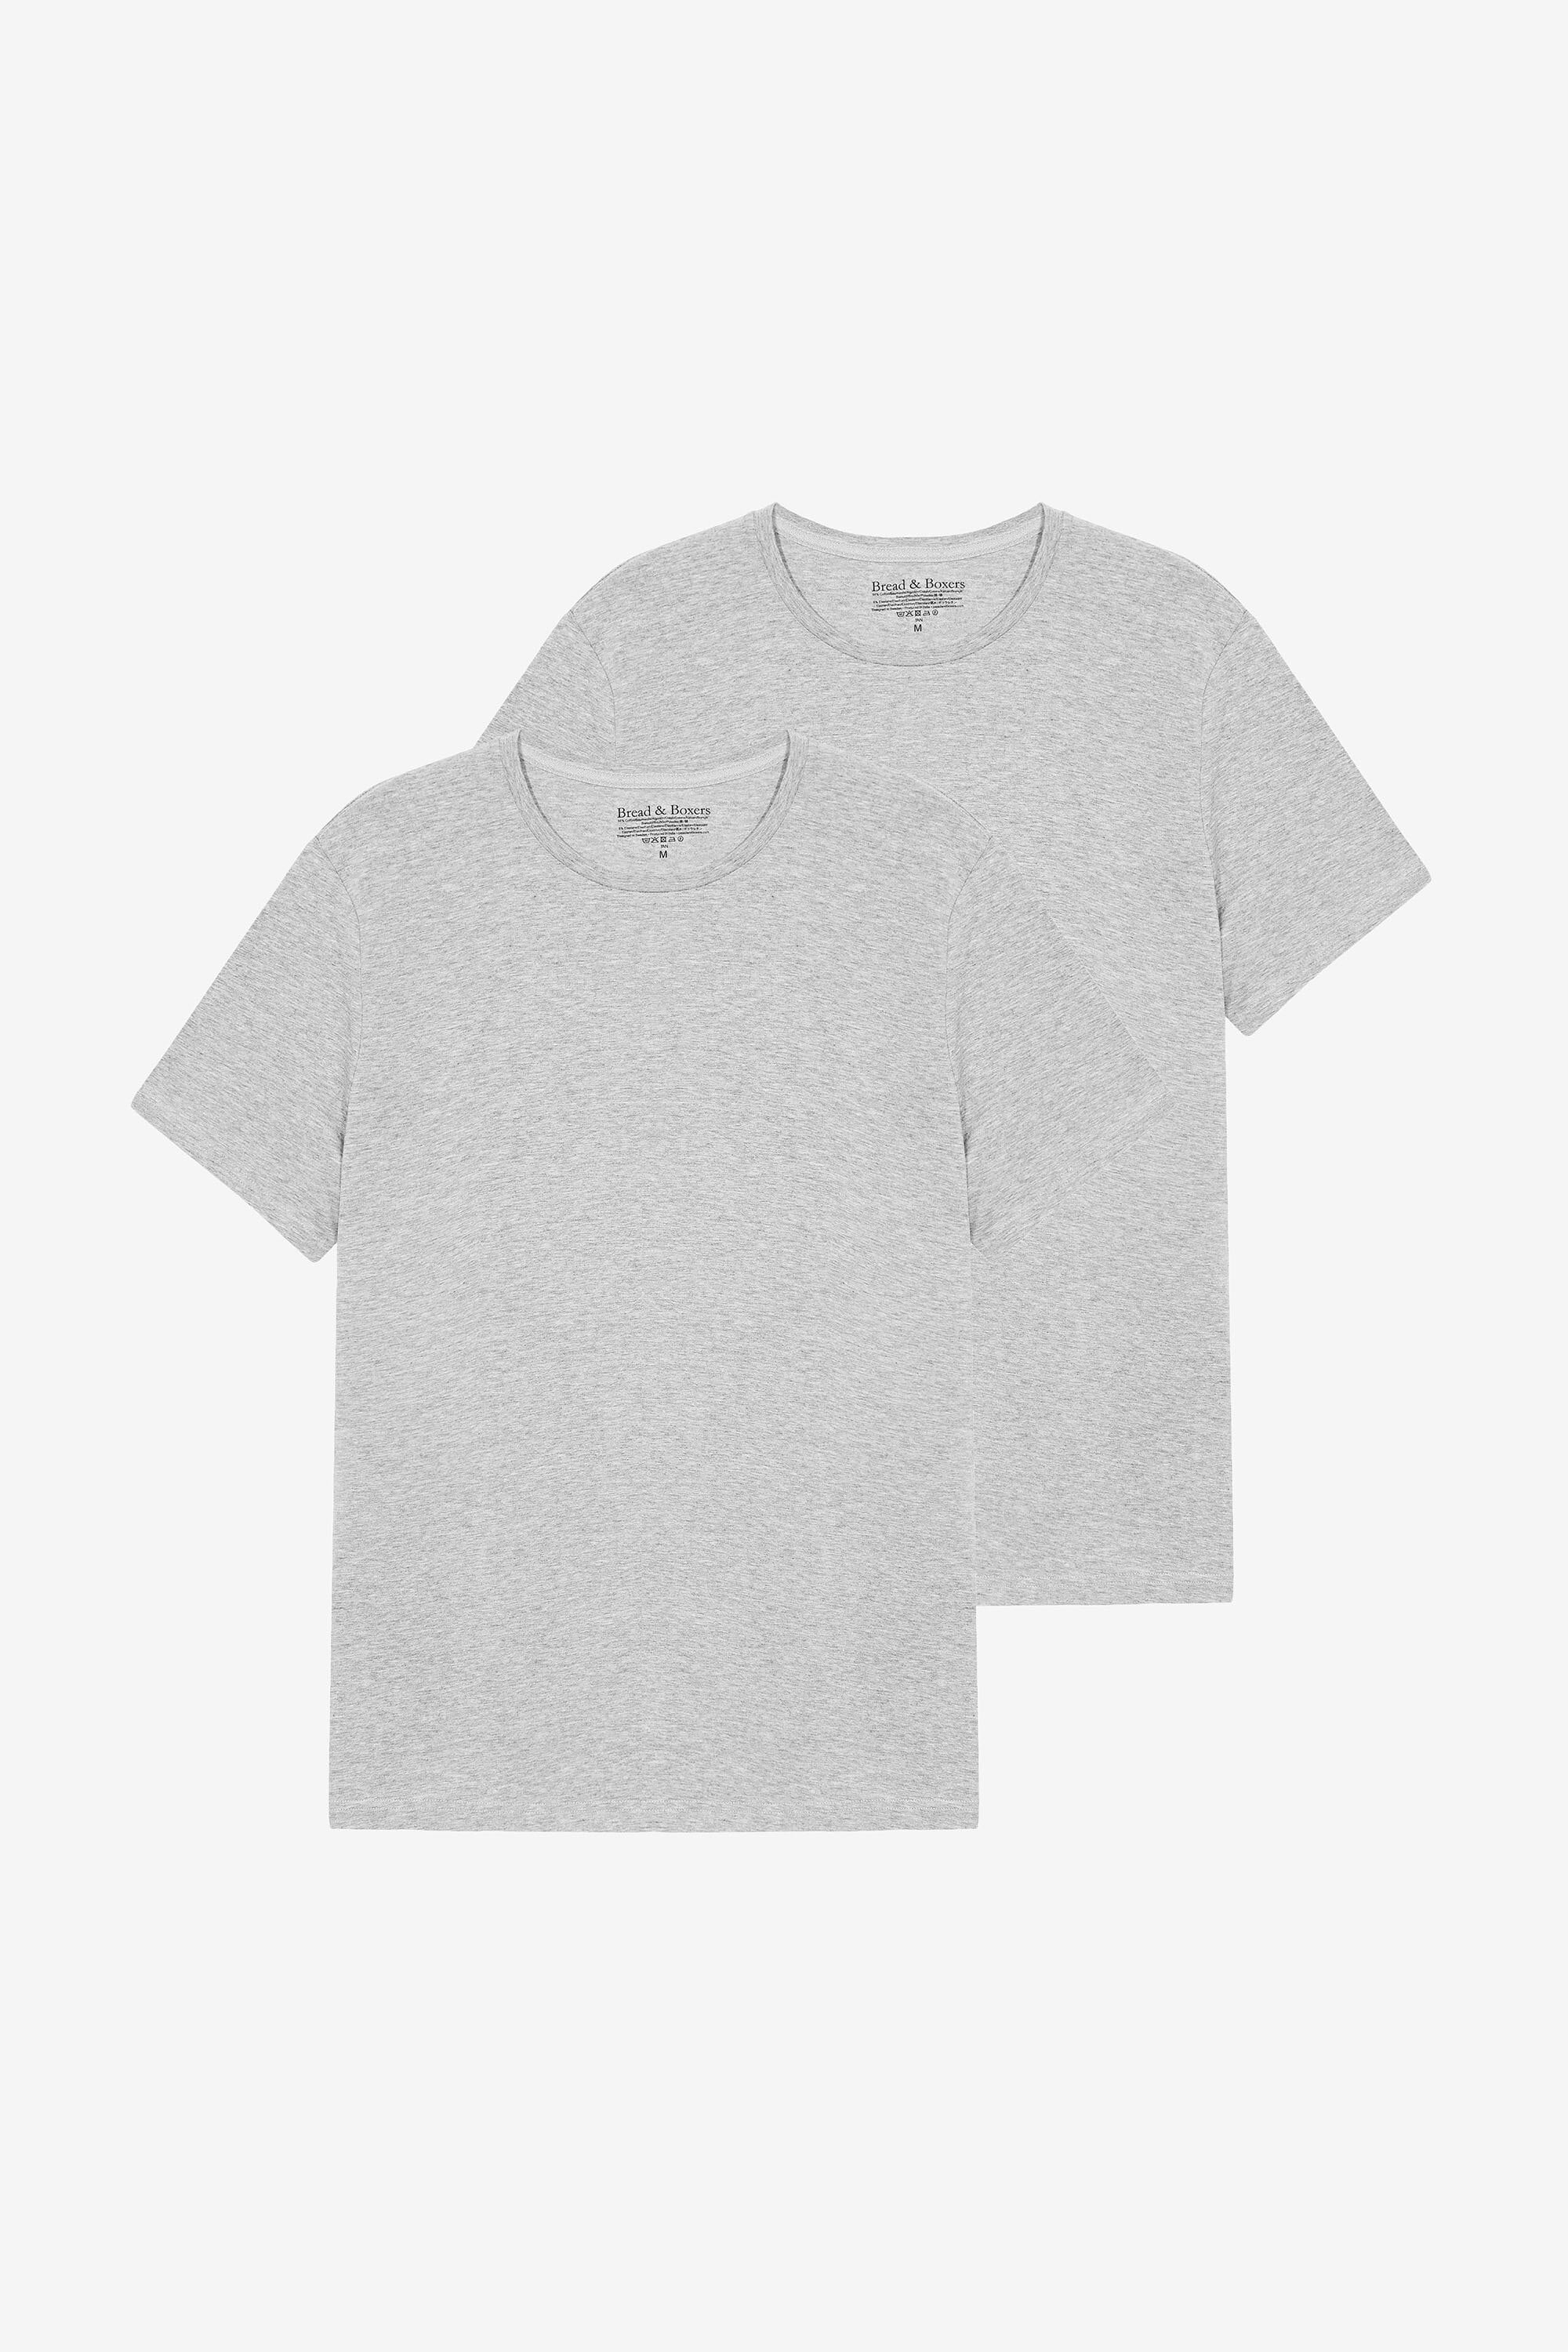 Gildan Kids' 2-Pack T-Shirt Black/White